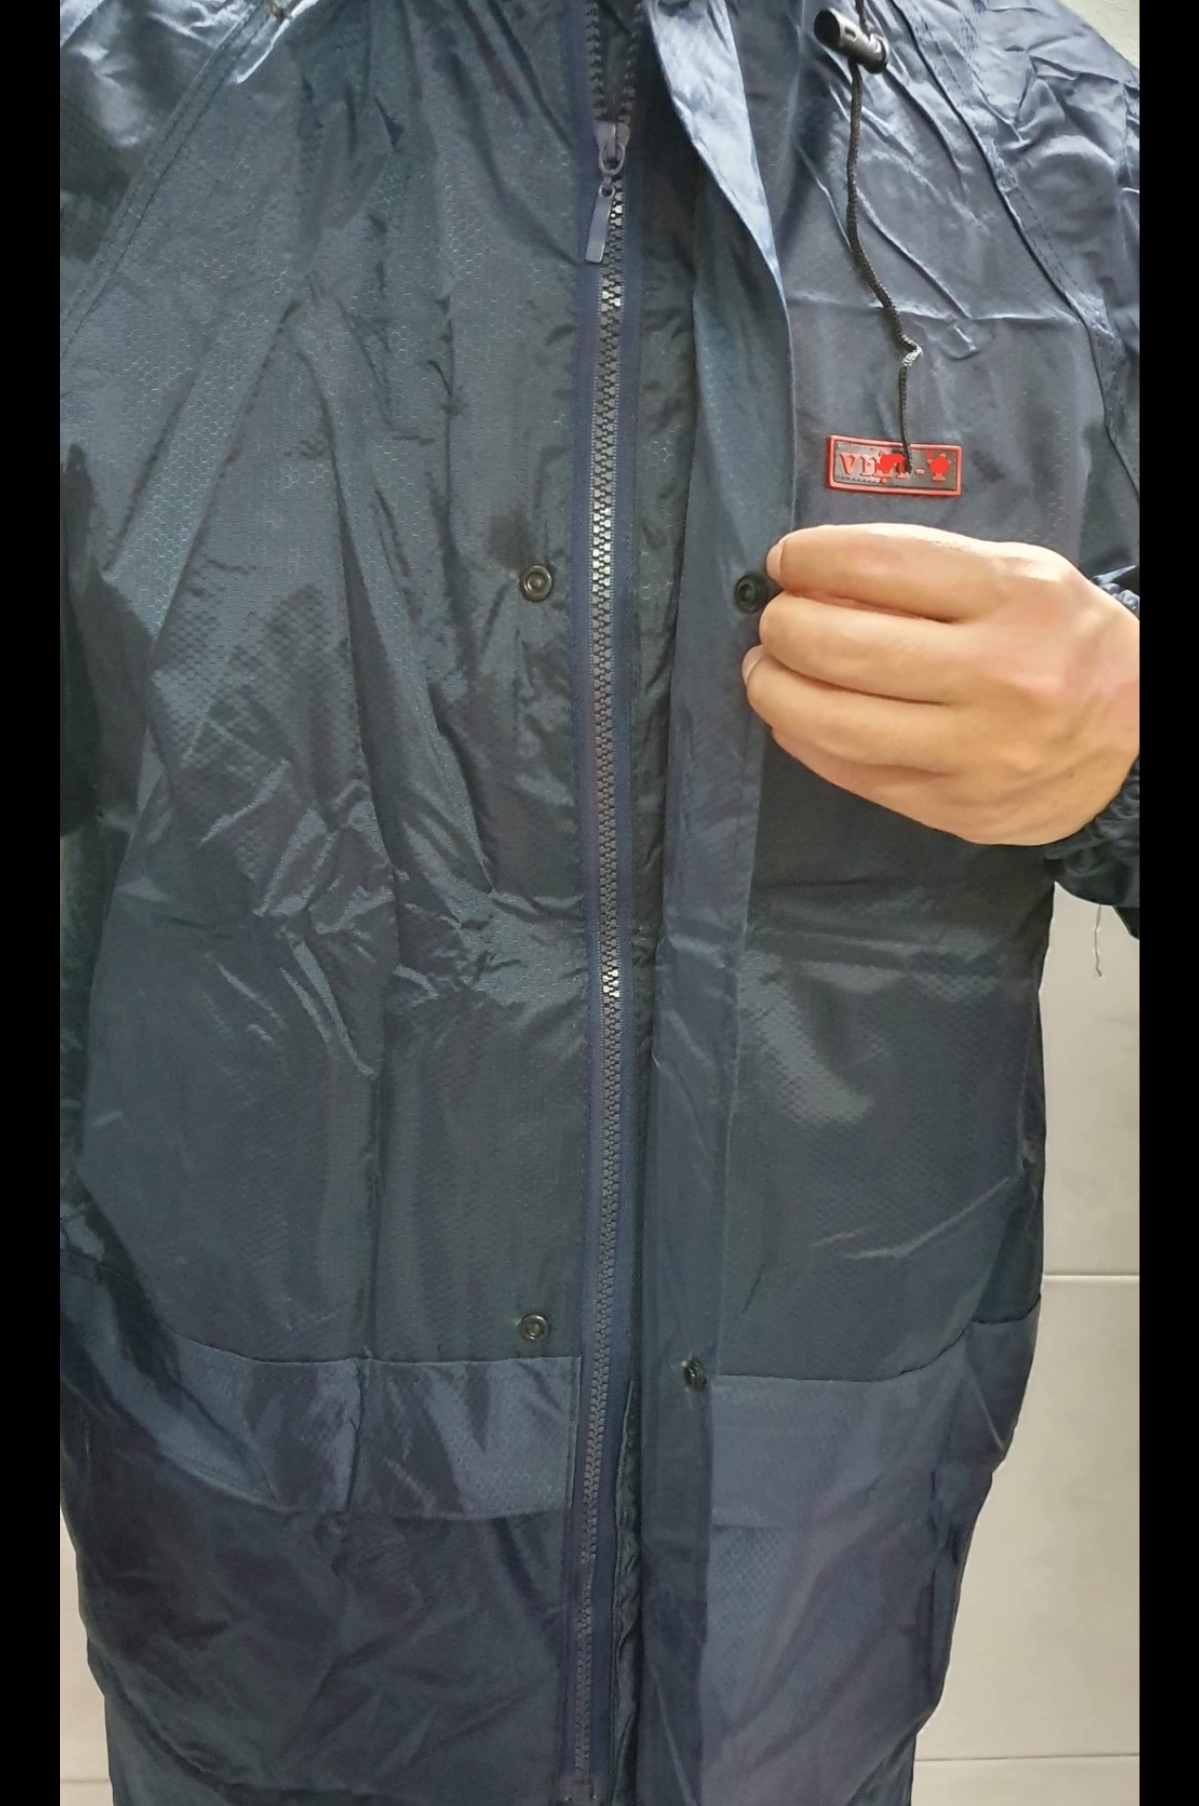 Bộ quần áo mưa vải dù chống thấm 2 khóa cao cấp